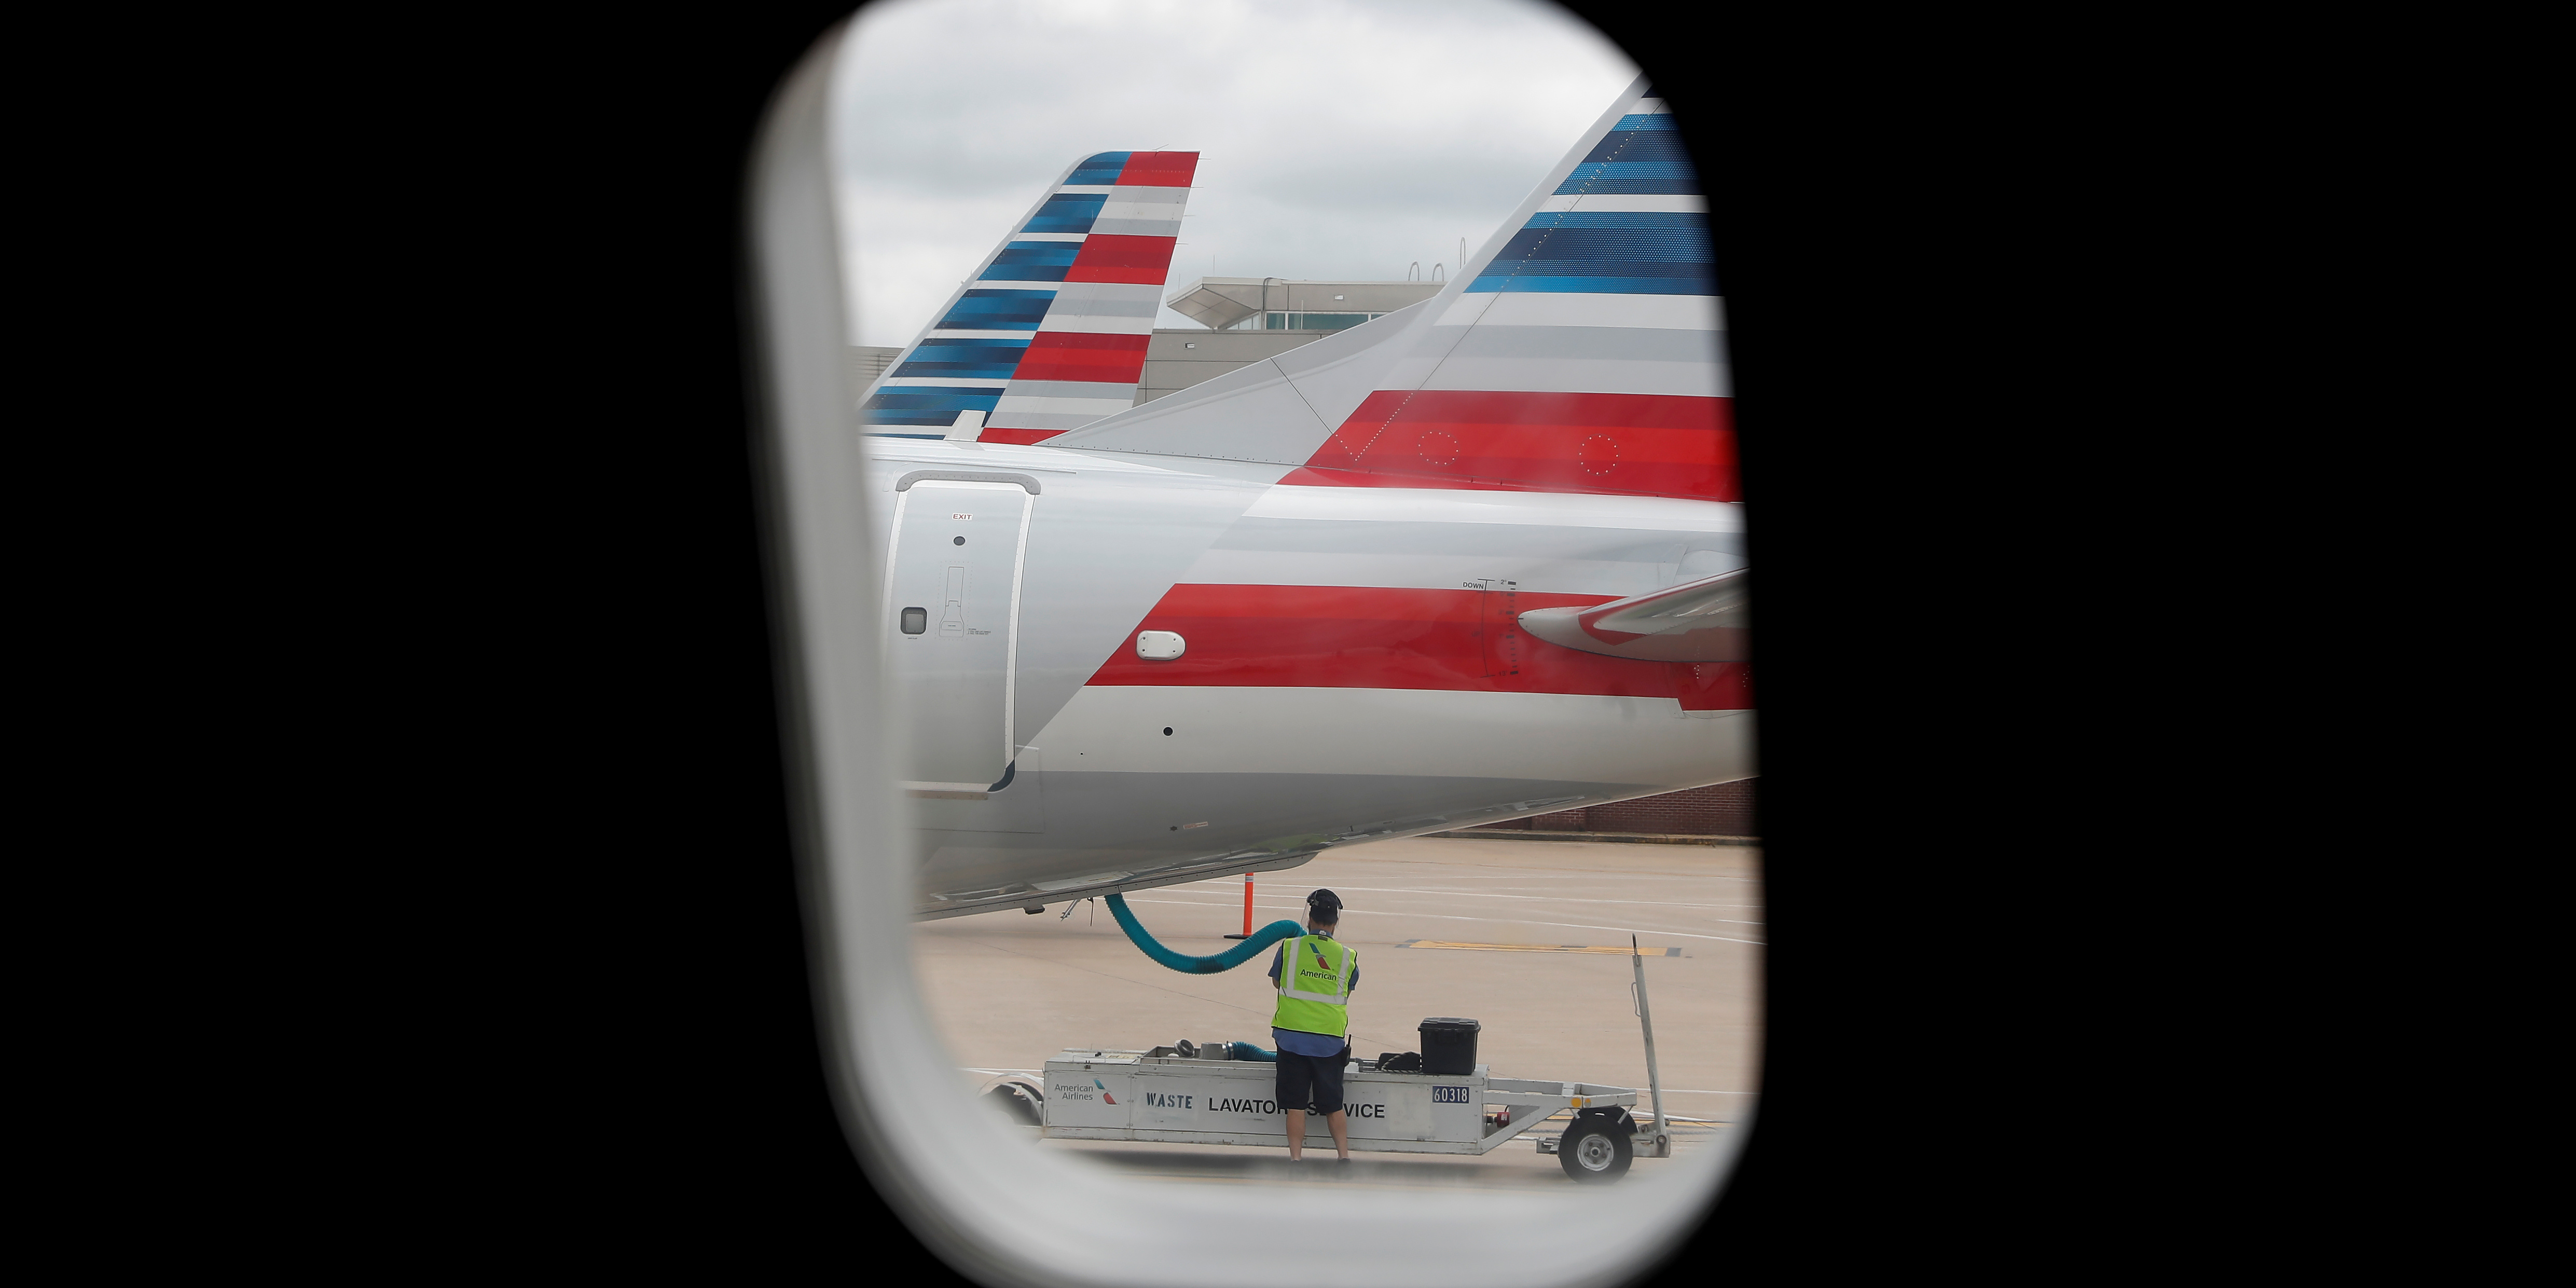 Pandémie: sans nouvelles aides, American Airlines licenciera 19.000 salariés en octobre